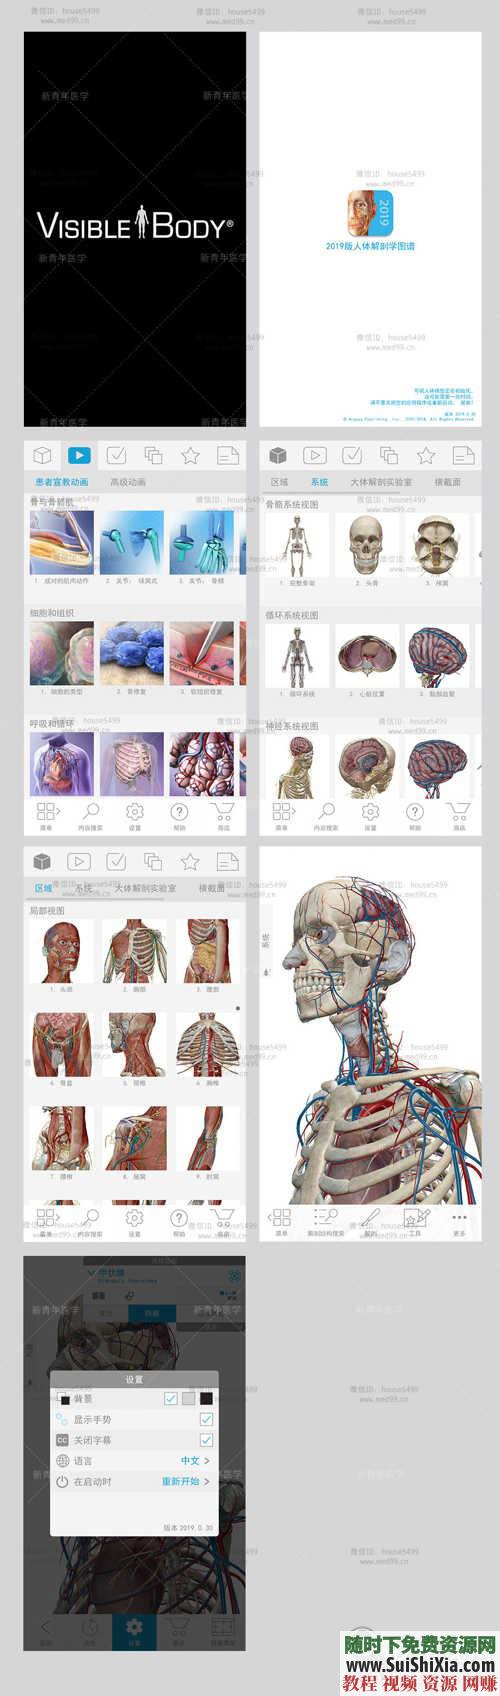 2019人体解剖学图谱app 最新Atlas破解 付费版 数据下载 安卓  最新Atlas2019人体解剖安卓APP破解+付费版+数据打包下载 第5张